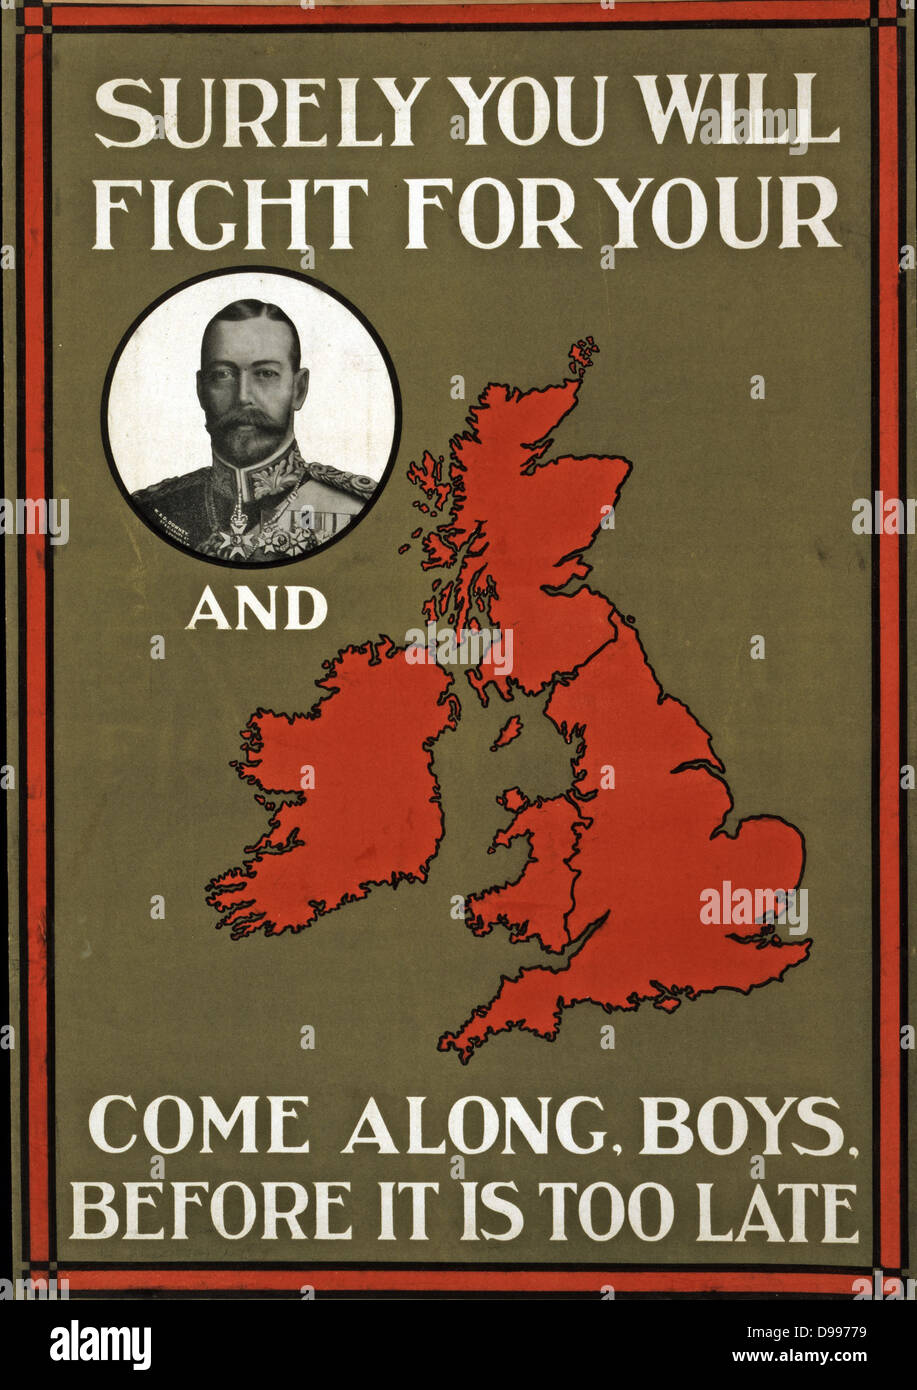 Guerra svolsero un poster del British King George V e uno slogan "urely si lotta per il tuo (Re, implicite) e il paese (implicita).Questo è stato un poster di propaganda in Inghilterra durante la Prima Guerra Mondiale. datato 1914-15 Foto Stock